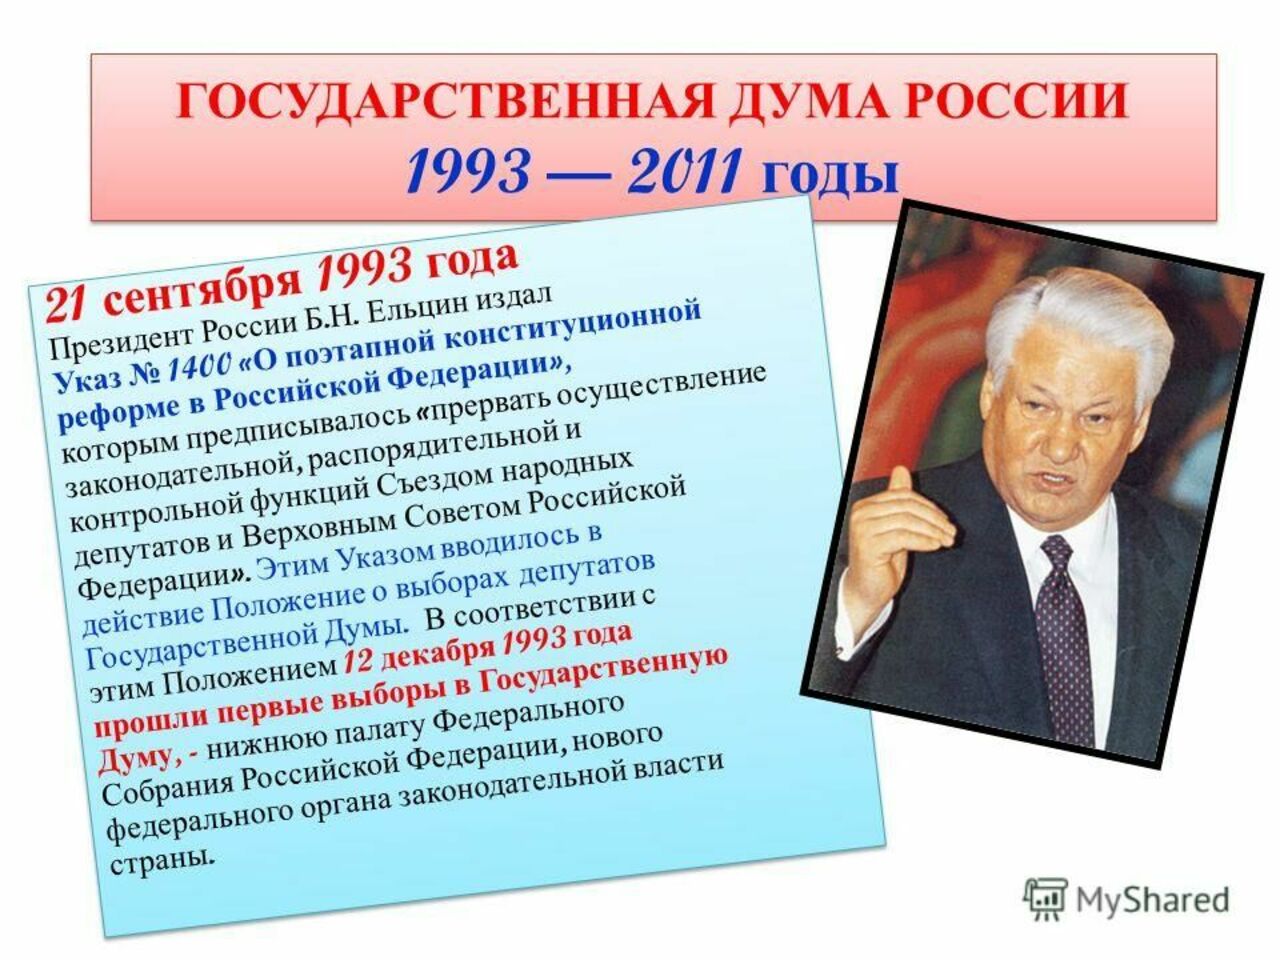 Б н ельцин подписал. Указ б н Ельцина от 21 сентября 1993. 21 Сентября 1993. Указ Ельцина 1400 от 21 сентября.